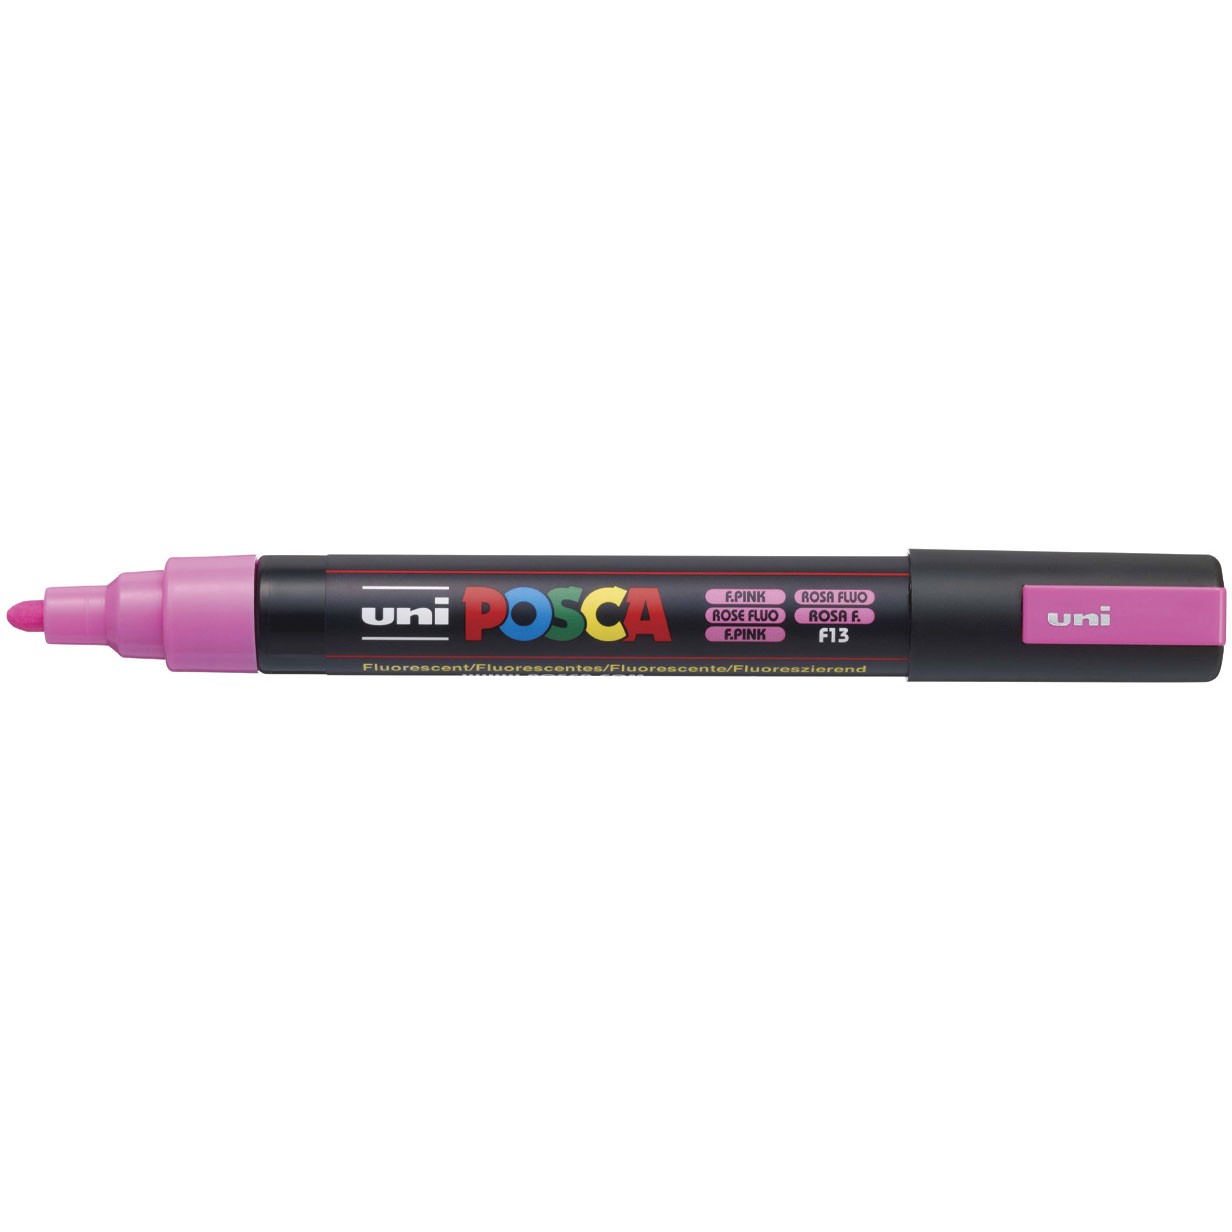 Uni Posca 5M tus med 2,5 mm spids i en fluorescerende pink neonfarve